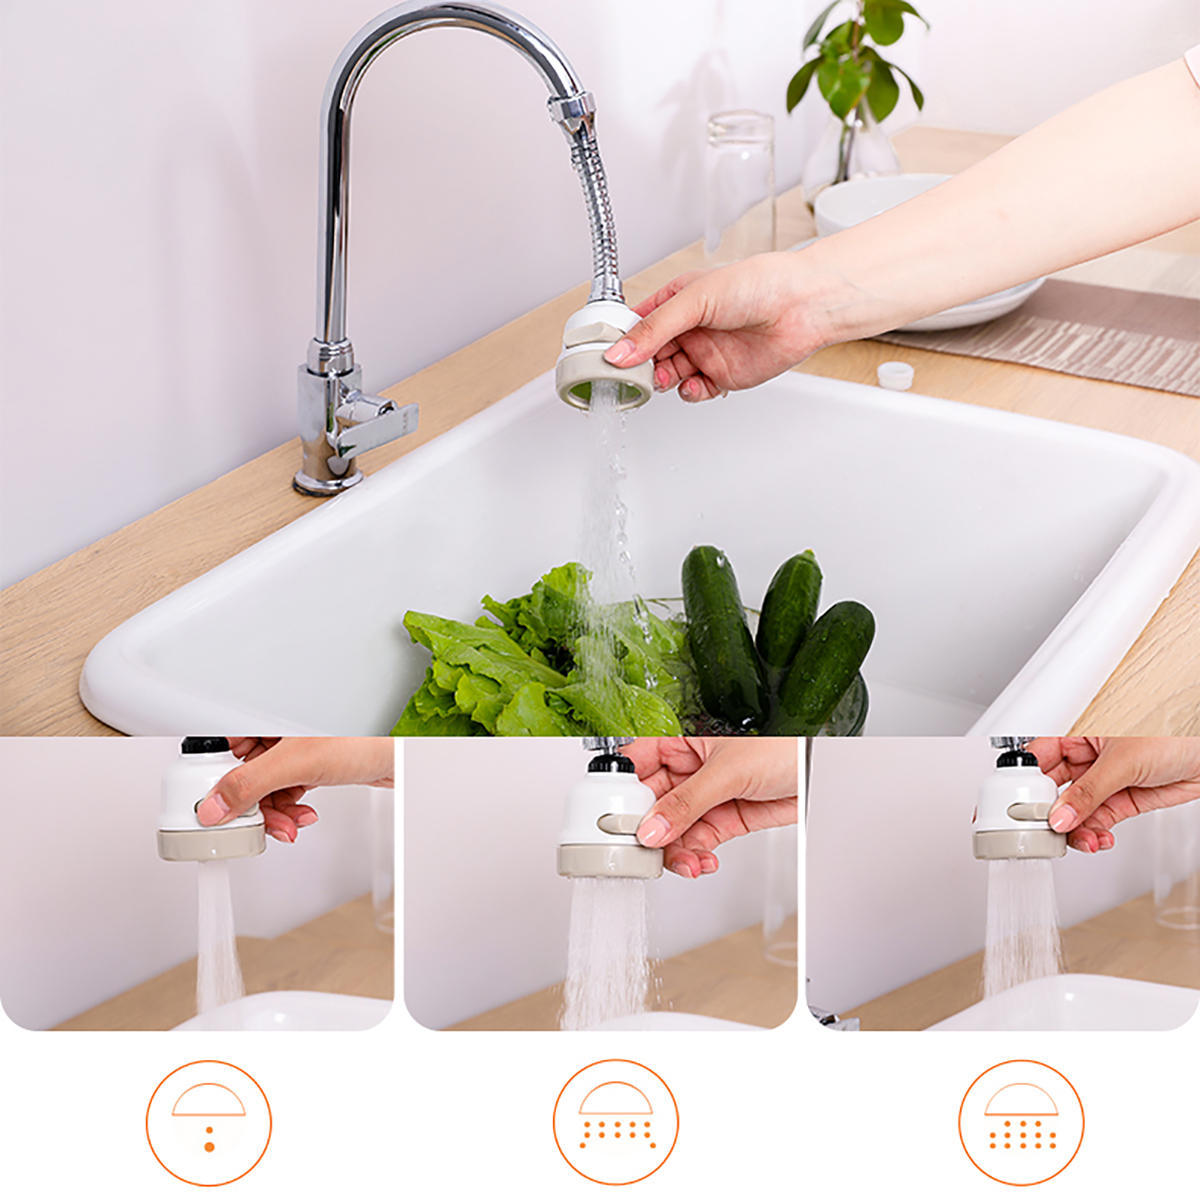 360 draaibare kraan sproeier attachment keuken kraan abs water kraan sproeier splash filter nozzle aanpassen voor keuken badkamer kraan